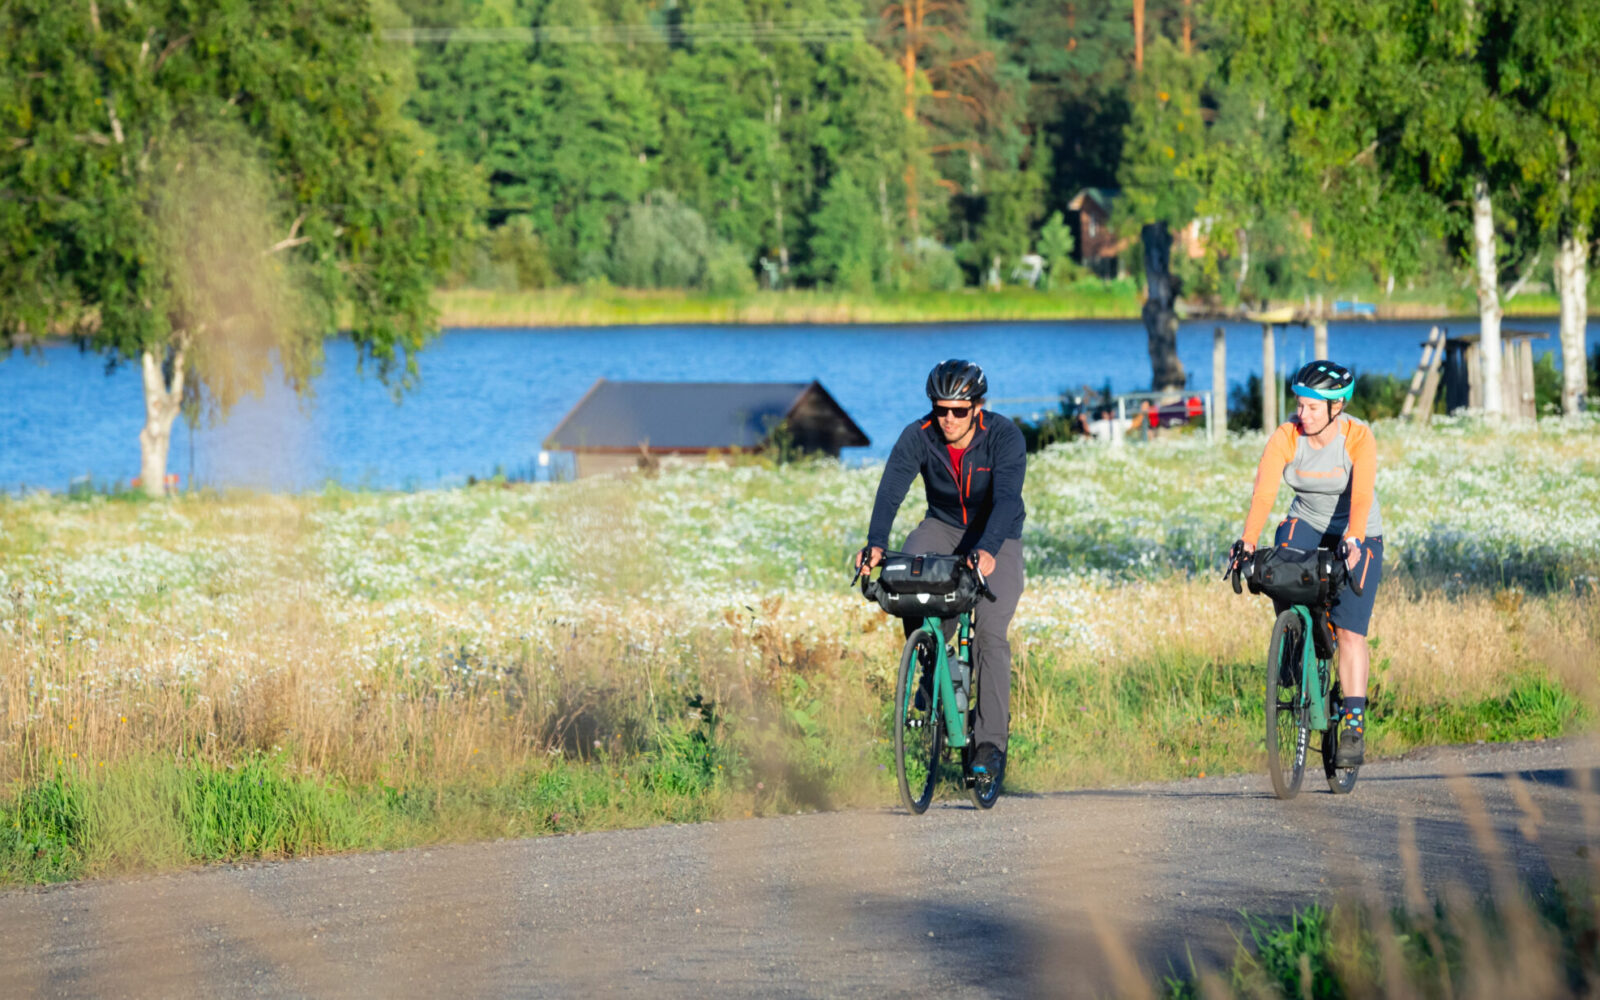 Mies ja nainen pyöräilemässä maalla järven siintäessä horisontissa kesällä.